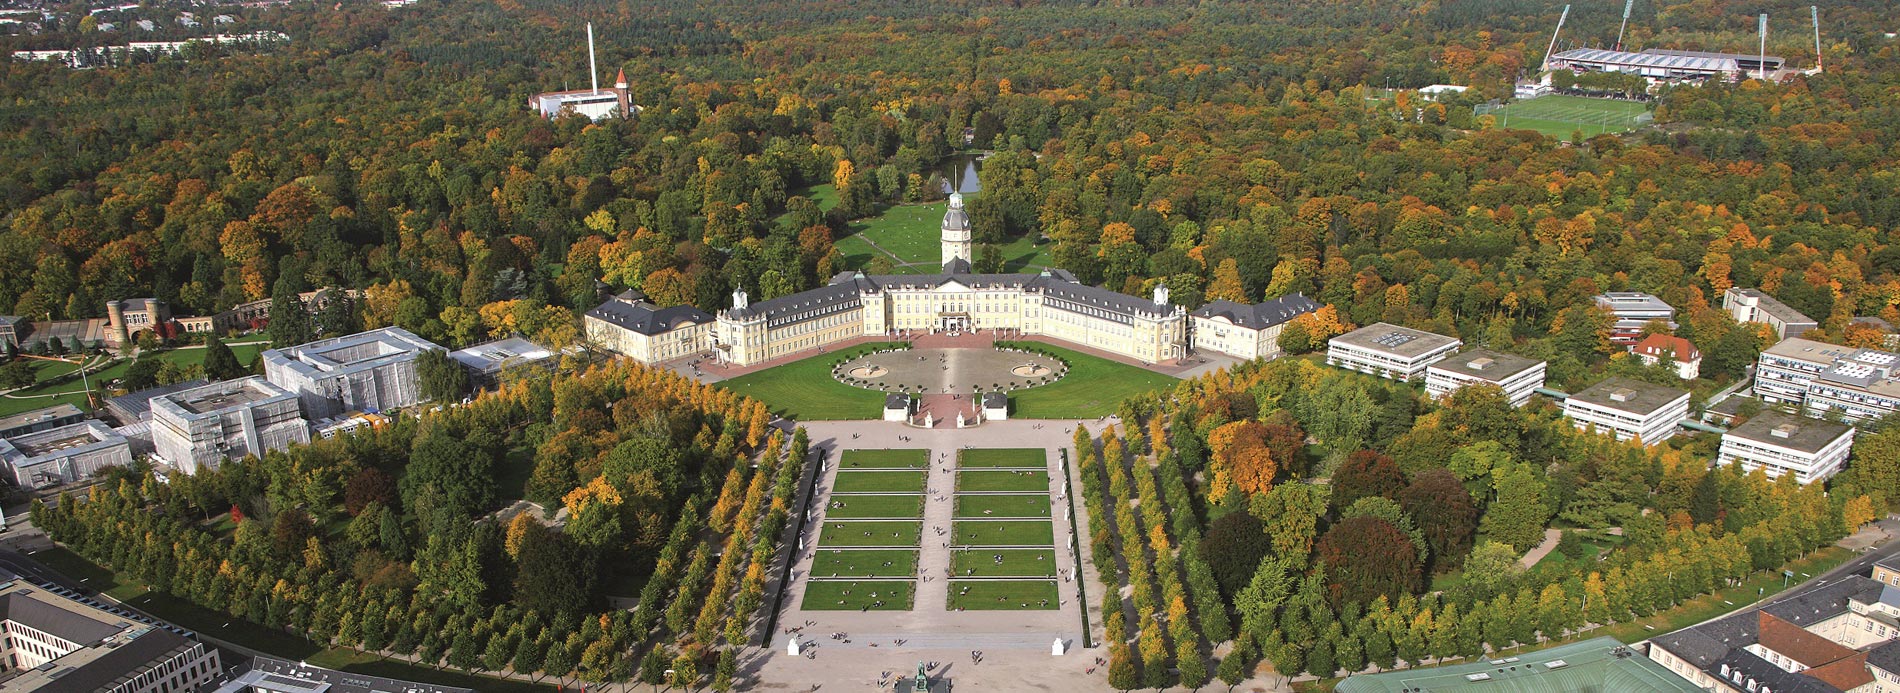 Luftbild von Karlsruhe mit Schloss